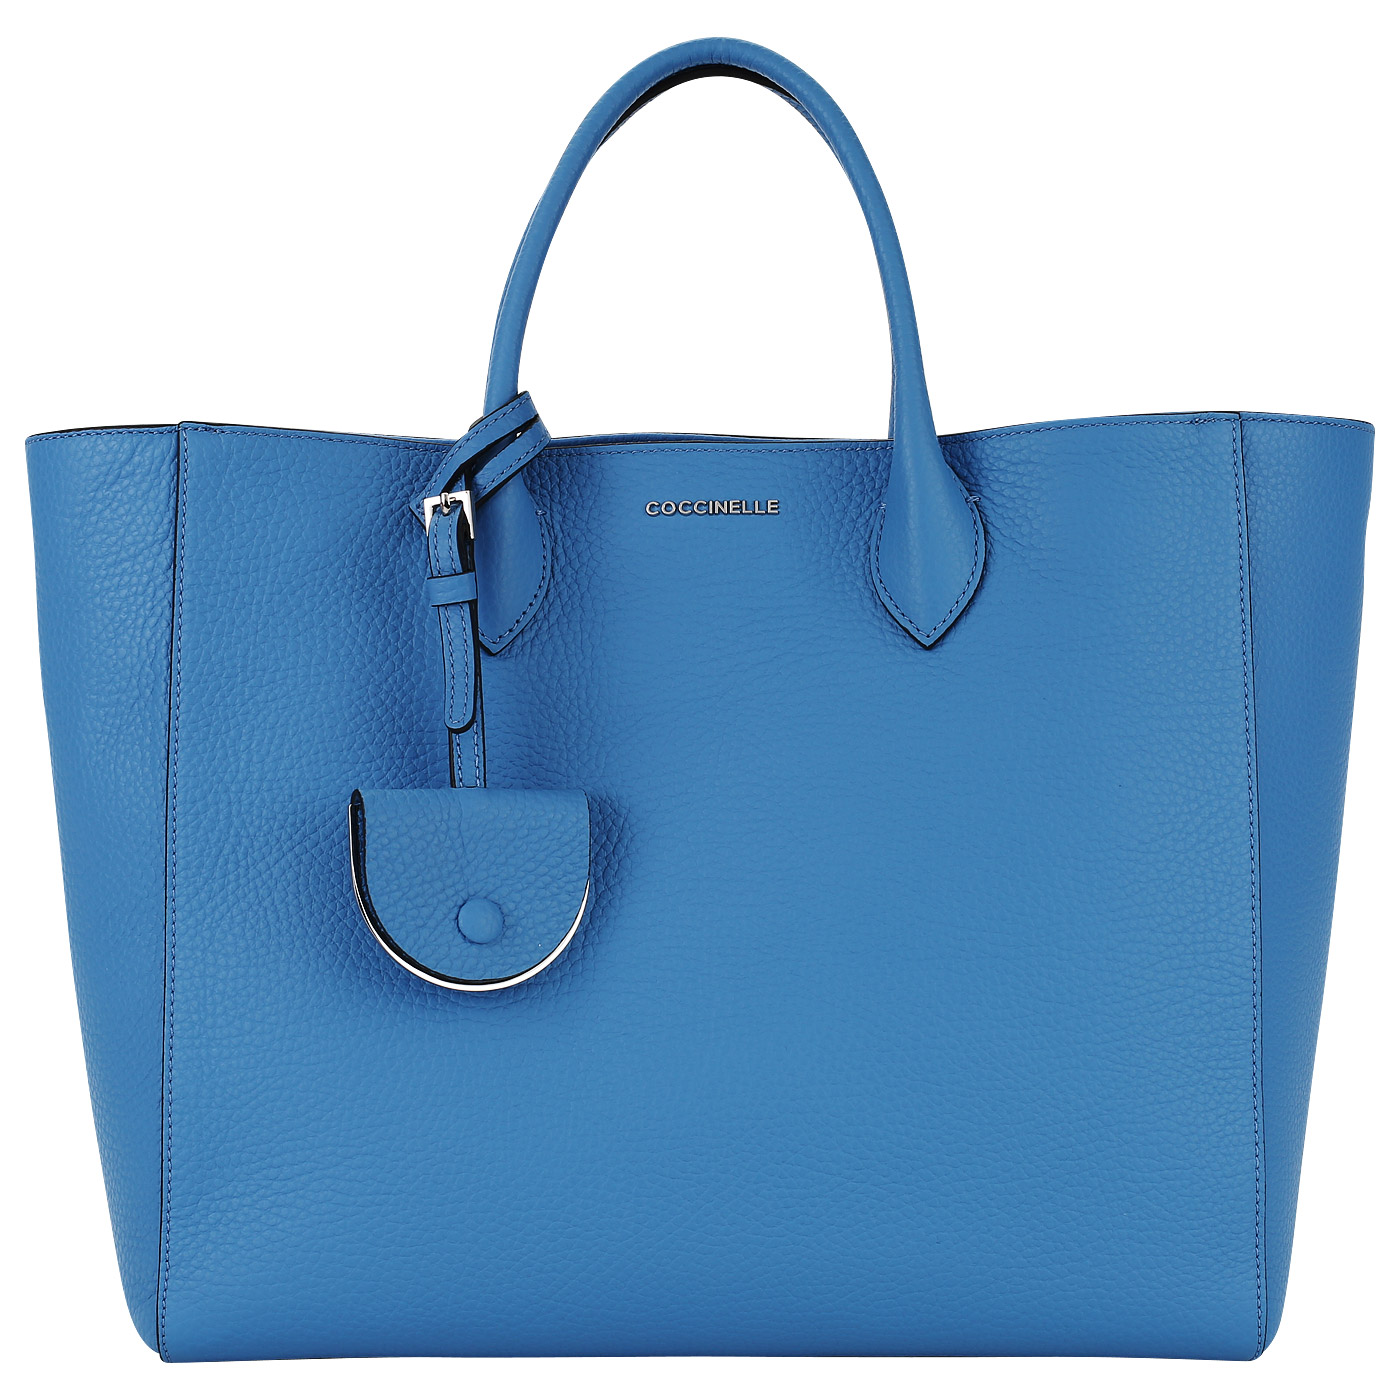 Купить голубую сумку женскую. Сумка кокинелли синяя. Сумка шоппер Coccinelle. Coccinelle шоппер синяя. Coccinelle сумка голубая шопер.